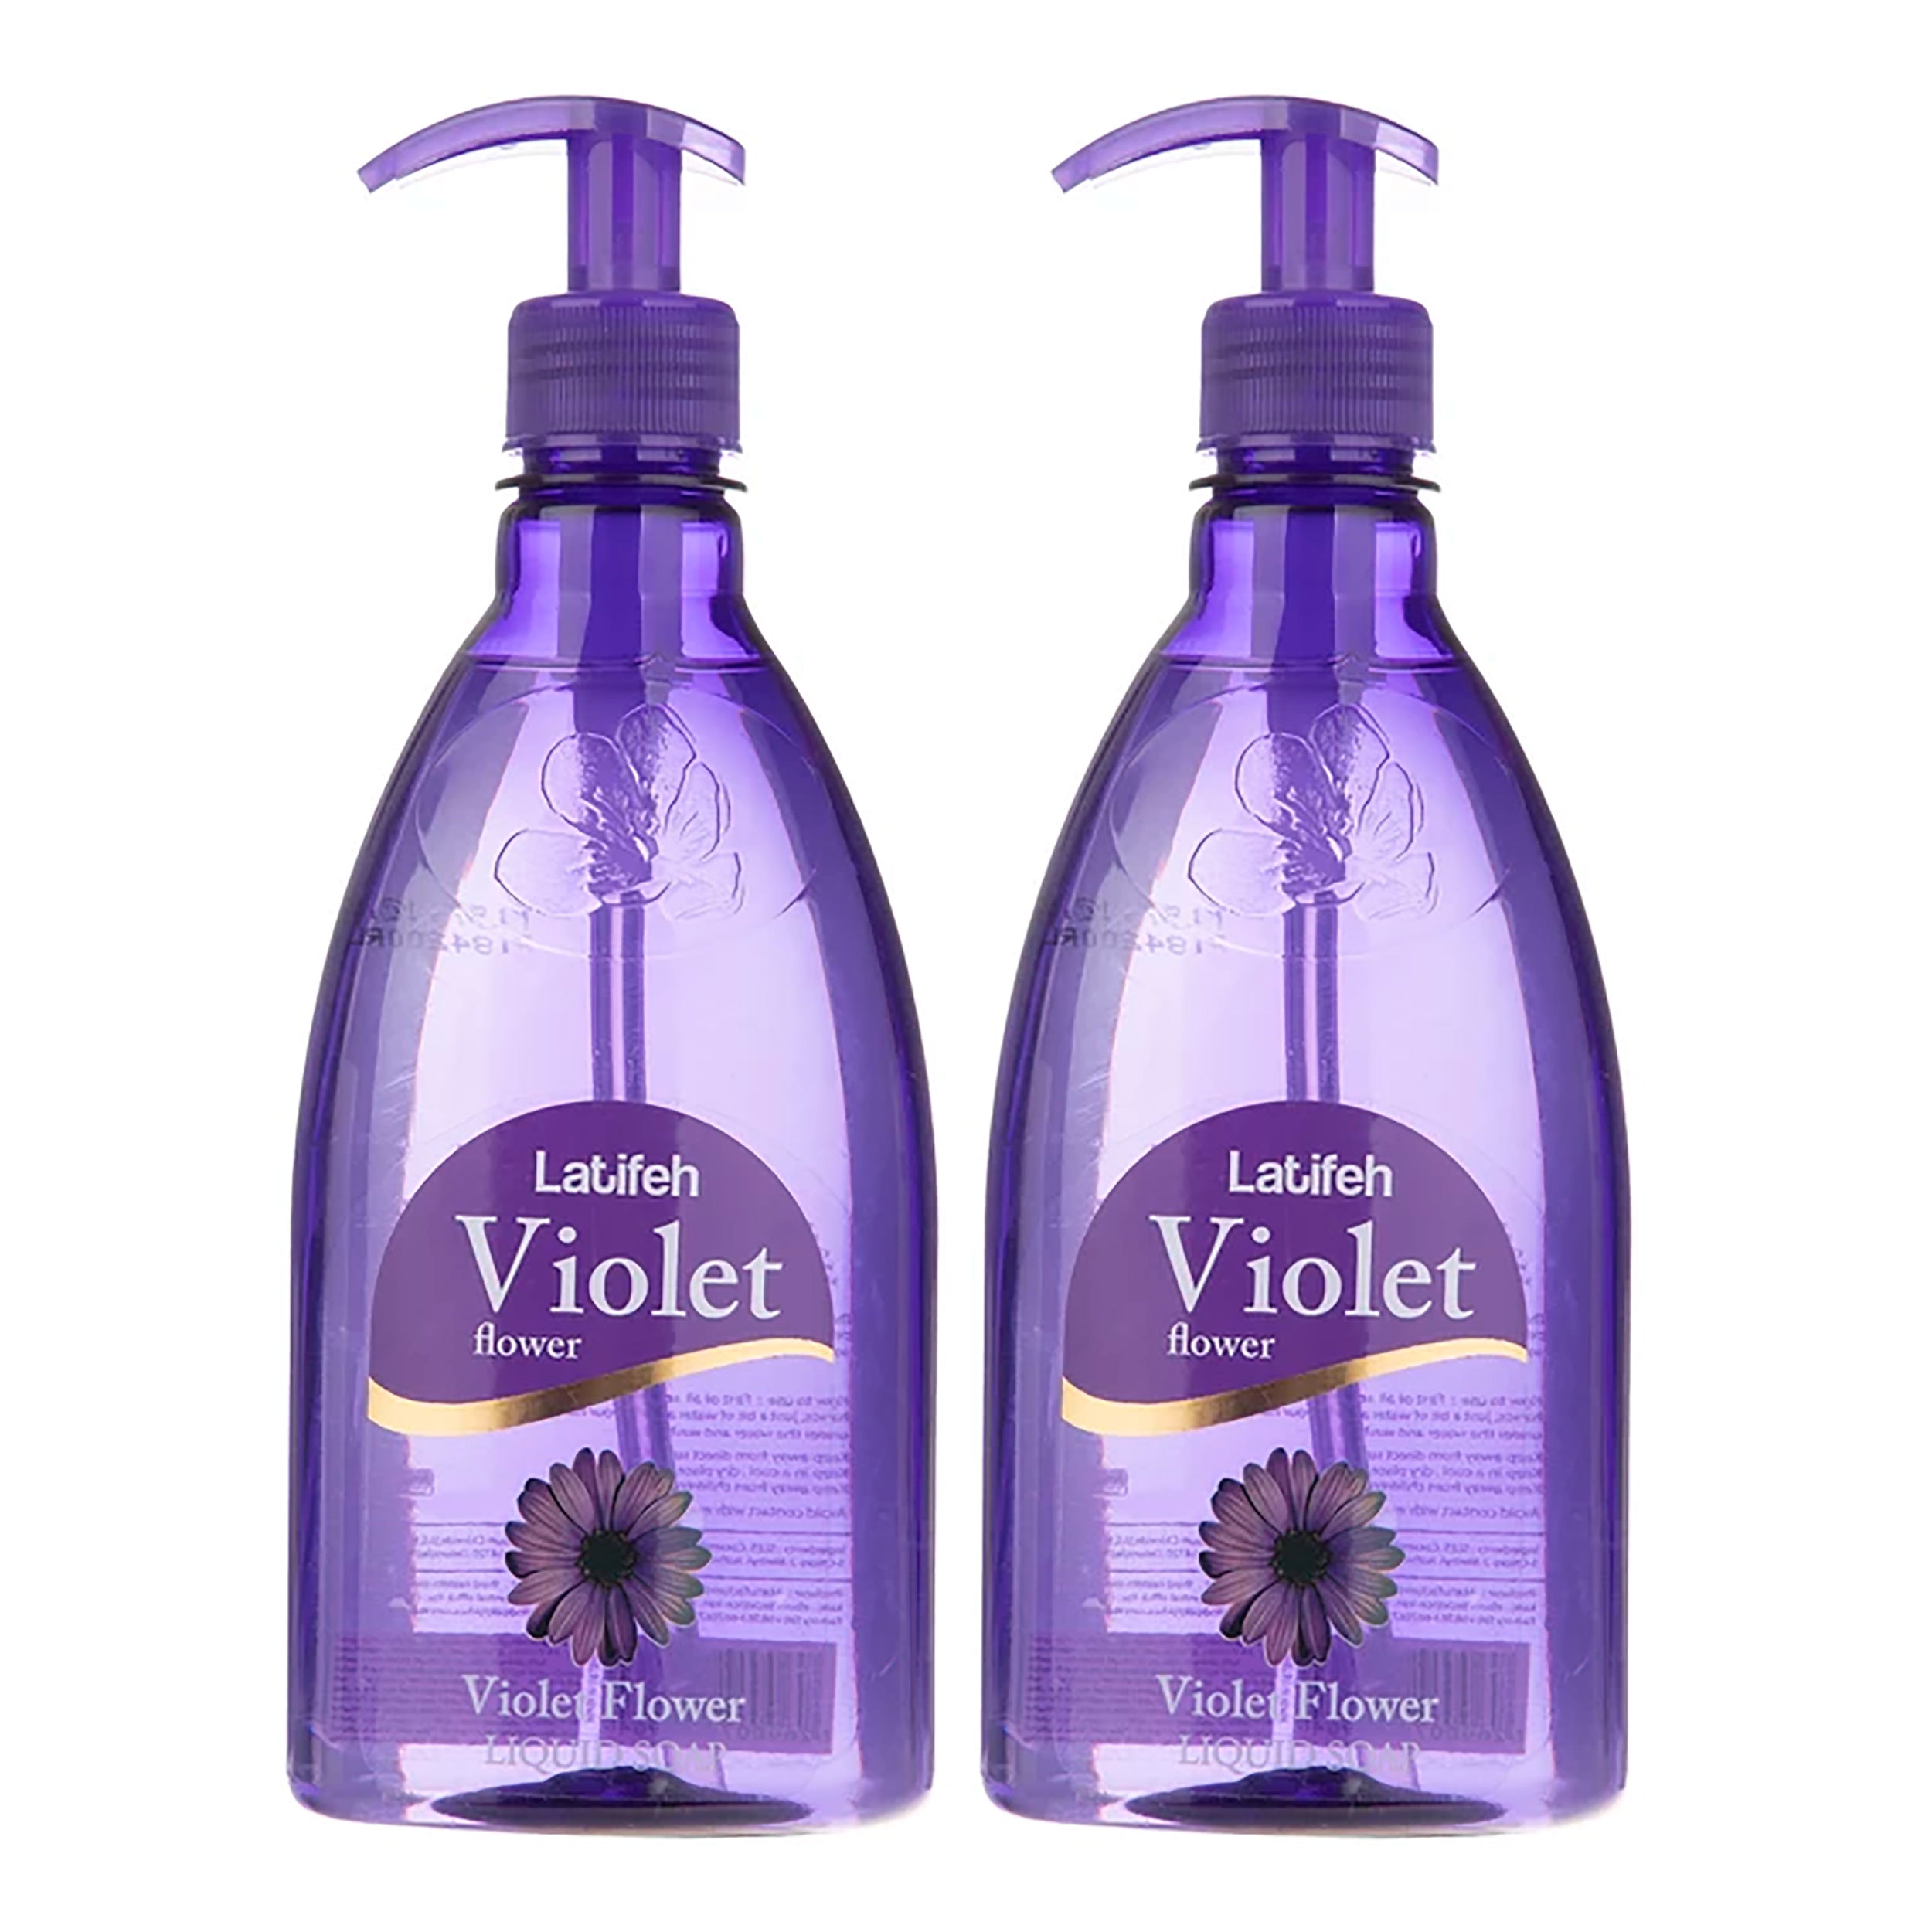 مایع دستشویی لطیفه مدل Violet Flower حجم 400 میلی لیتر بسته 2 عددی